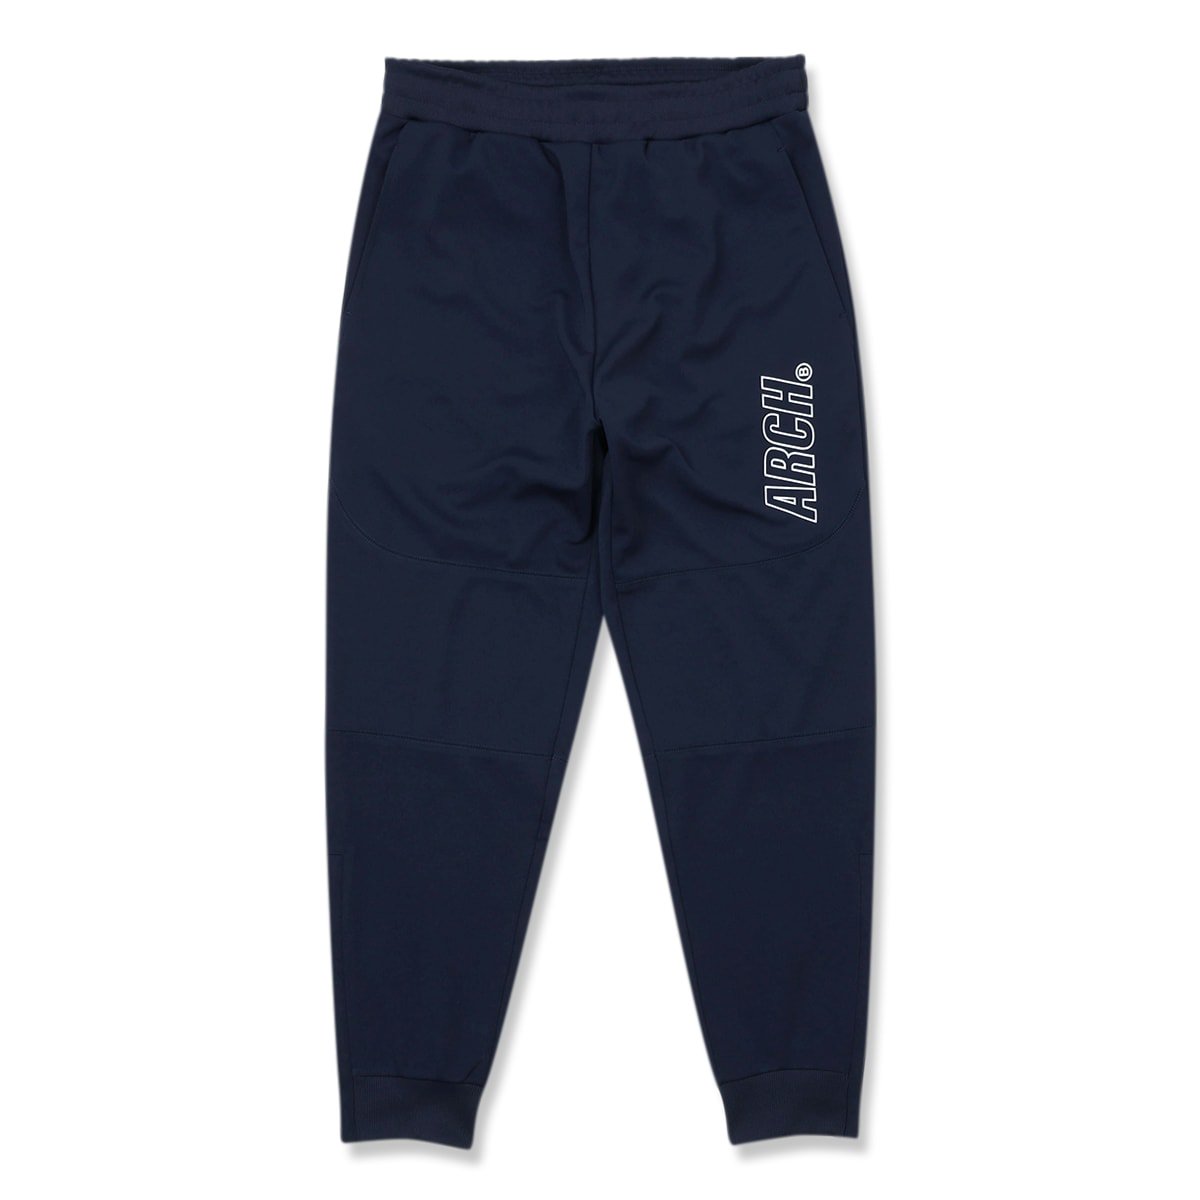 racing B jersey jogger pants【navy】